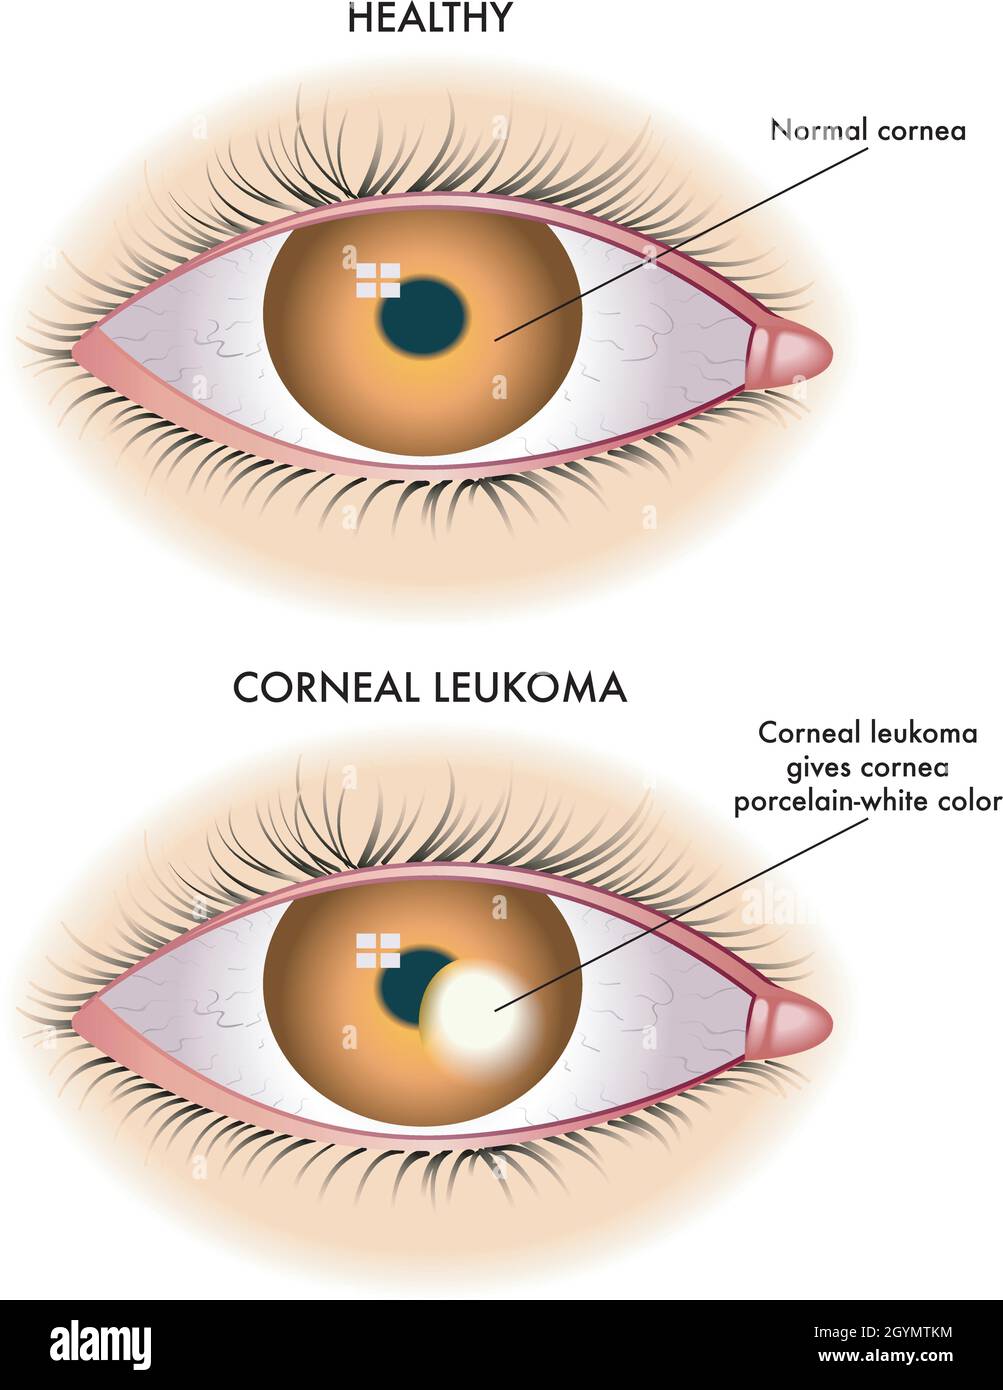 L'illustration médicale montre la comparaison entre un œil normal et un œil affecté par un leukome cornéen. Illustration de Vecteur